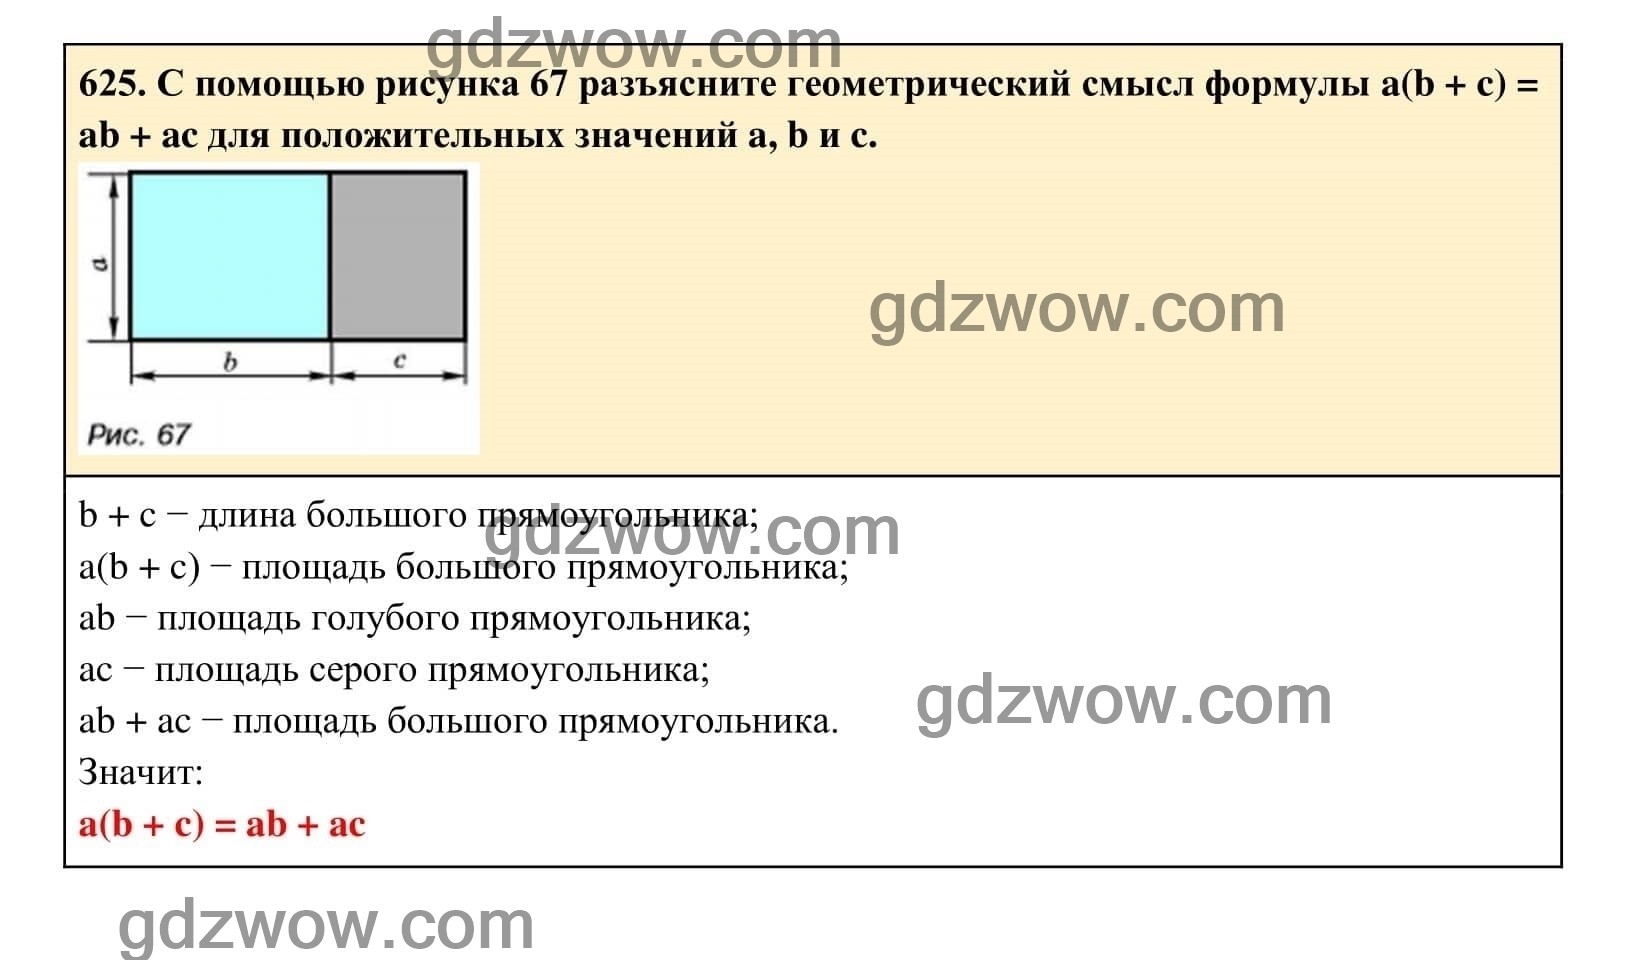 Упражнение 625 - ГДЗ по Алгебре 7 класс Учебник Макарычев (решебник) - GDZwow